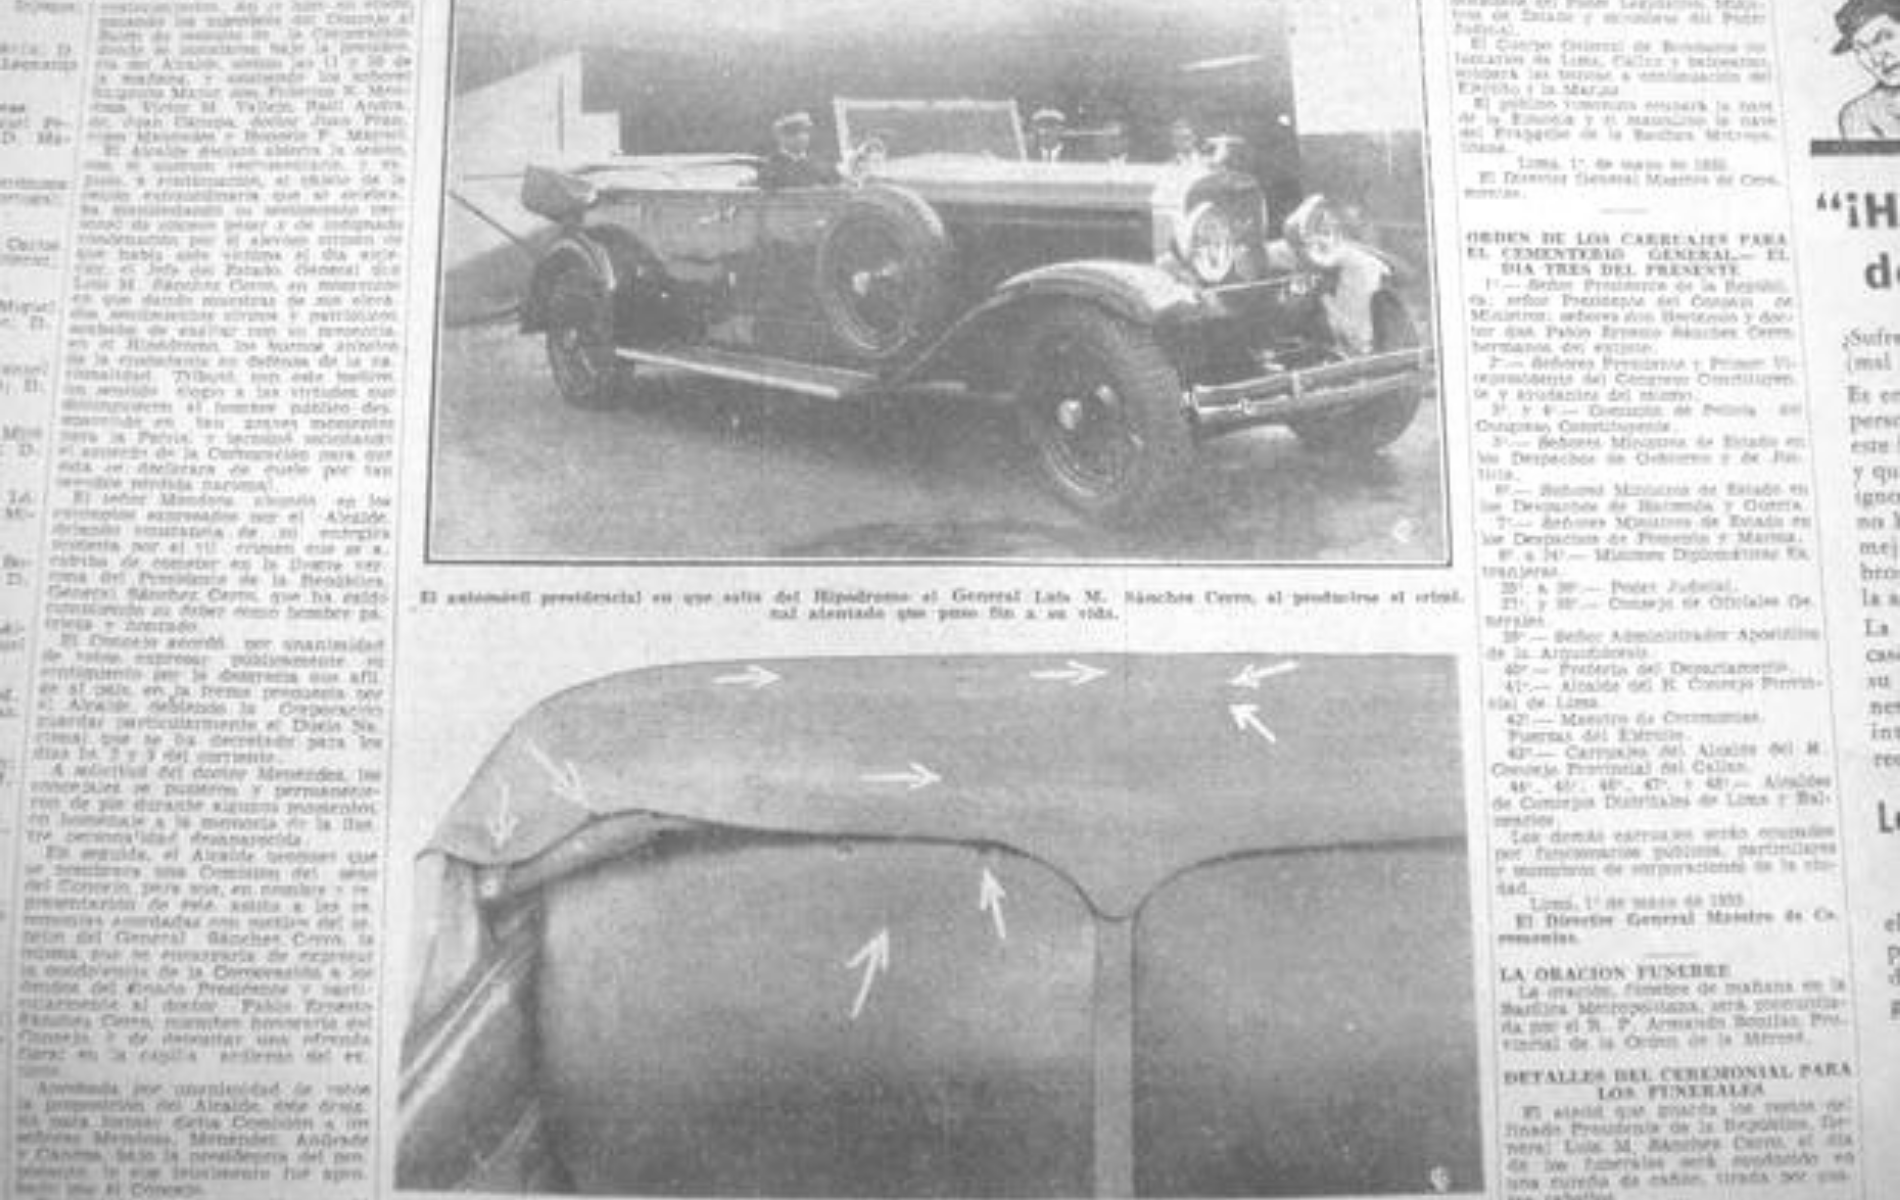 Fotografías del auto donde fue asesinado Sánchez Cerro difundidas en la prensa. | Foto: Archivo El Comercio